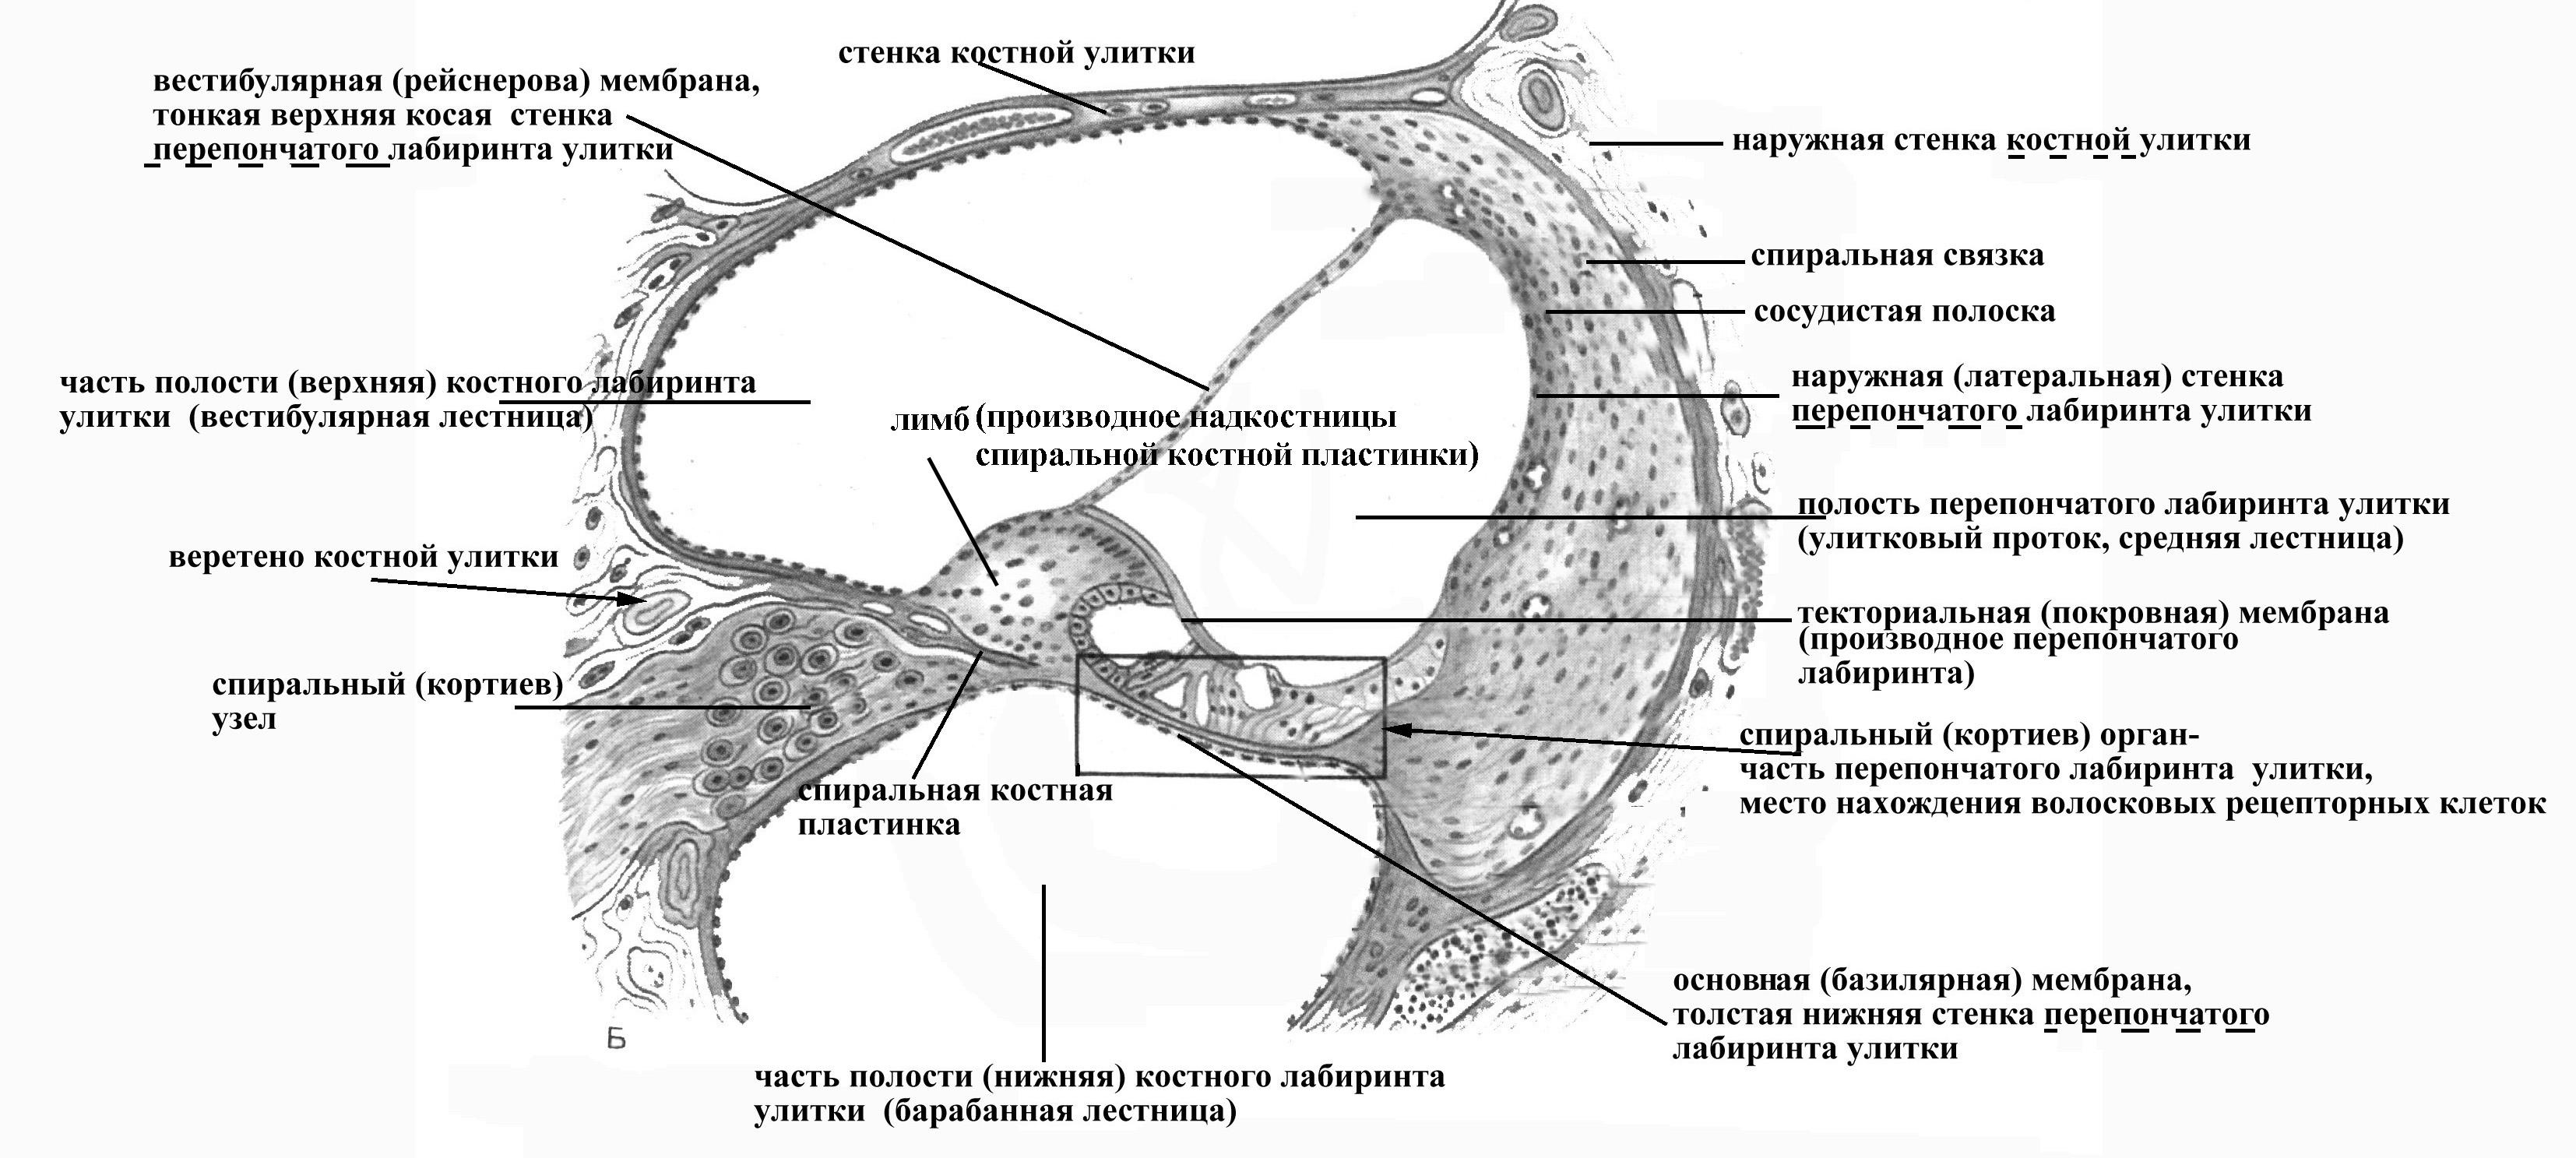 Канал улитки состоит из. Поперечный разрез улитки и Кортиева органа. Схема строения внутреннего уха гистология. Стенки улиткового протока анатомия. Перепончатый Лабиринт внутреннего уха.